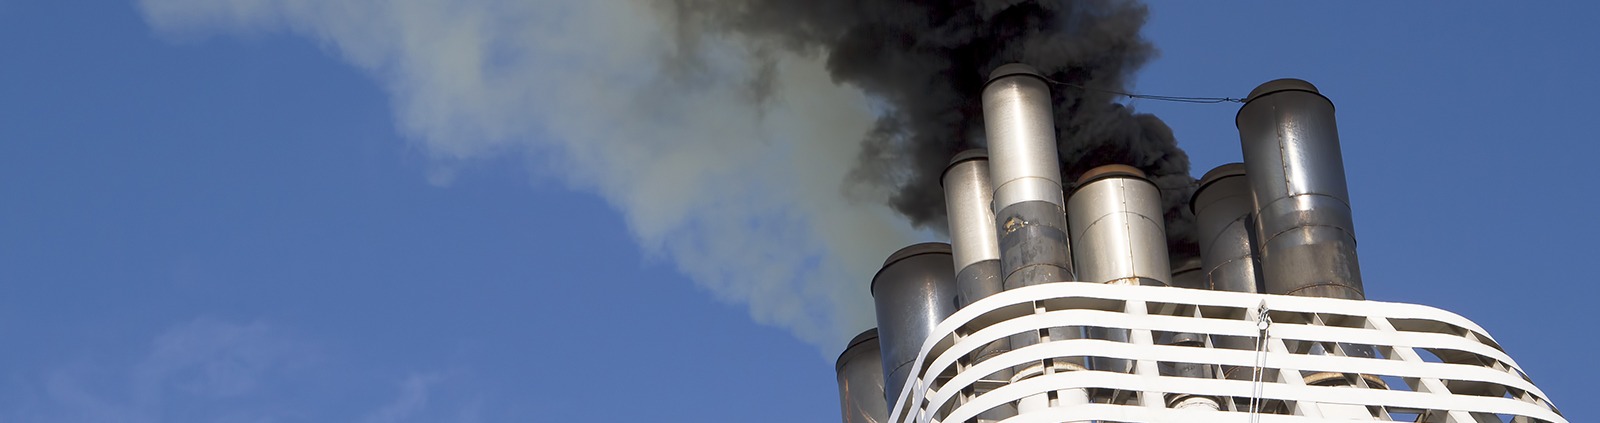 analyser les gaz d echappement des cheminees du navire
